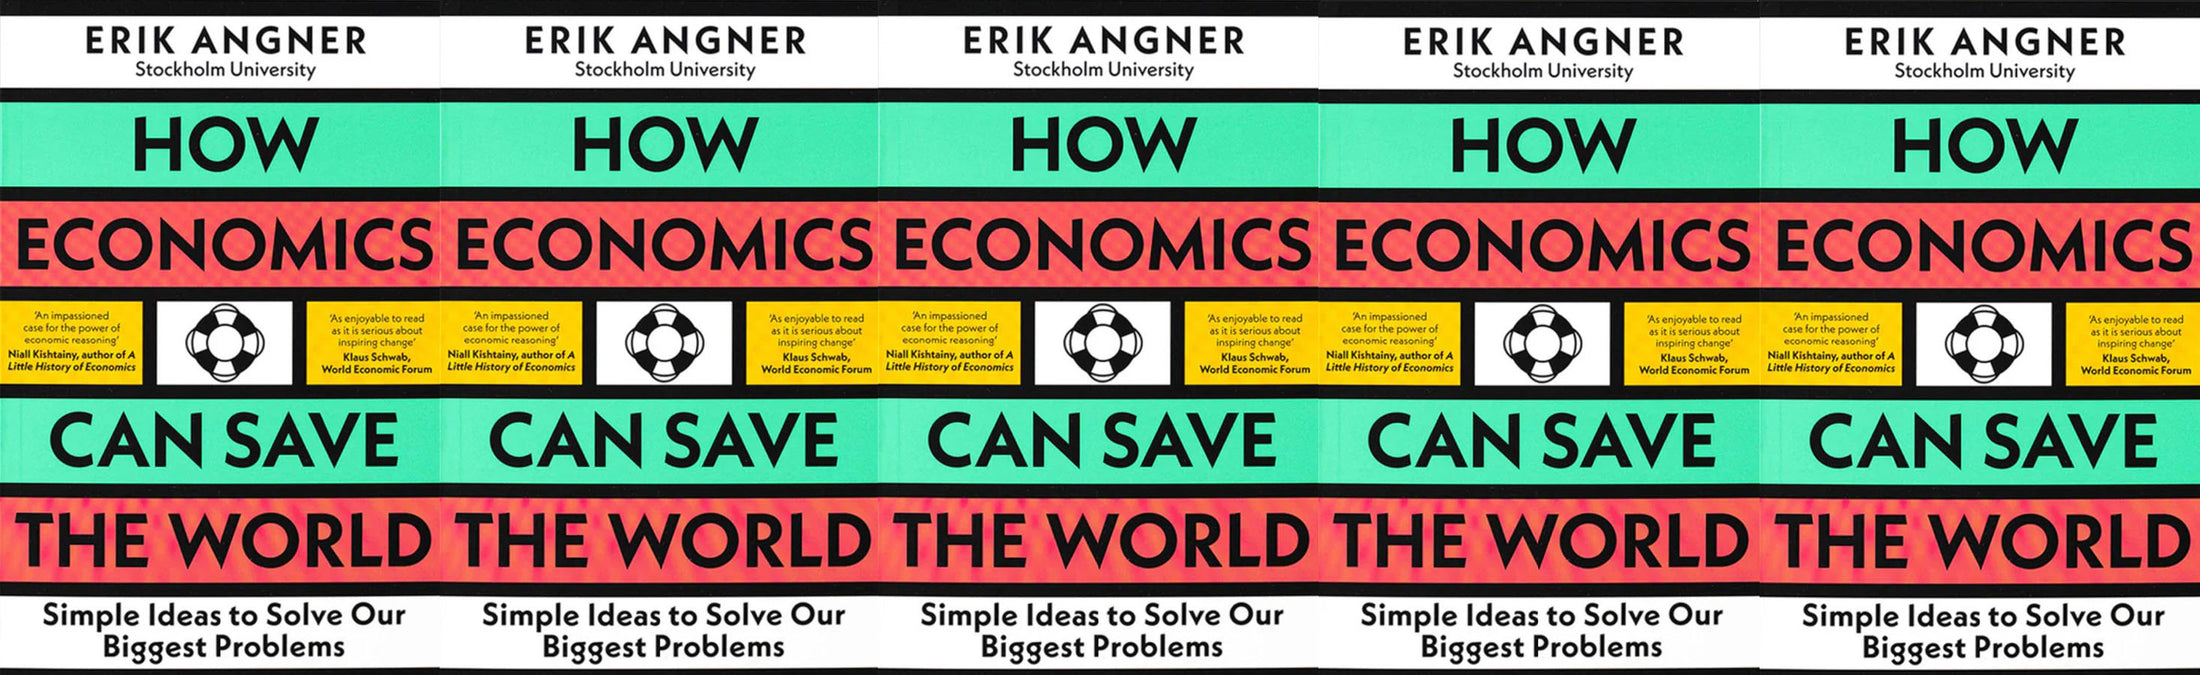 Dá se využít ekonomie k tomu, aby se zlepšil život nás všech?